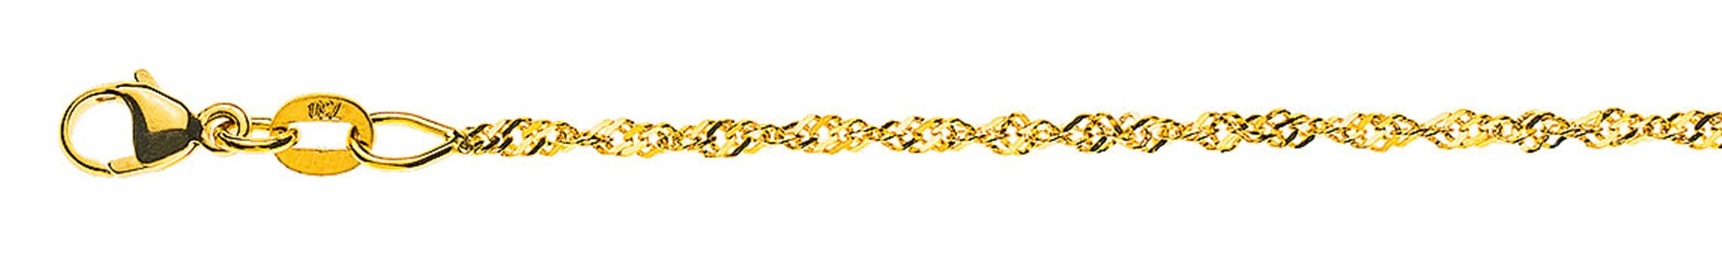 AURONOS Prestige Yellow Gold 18K Singapore Necklace 42cm 1.5mm